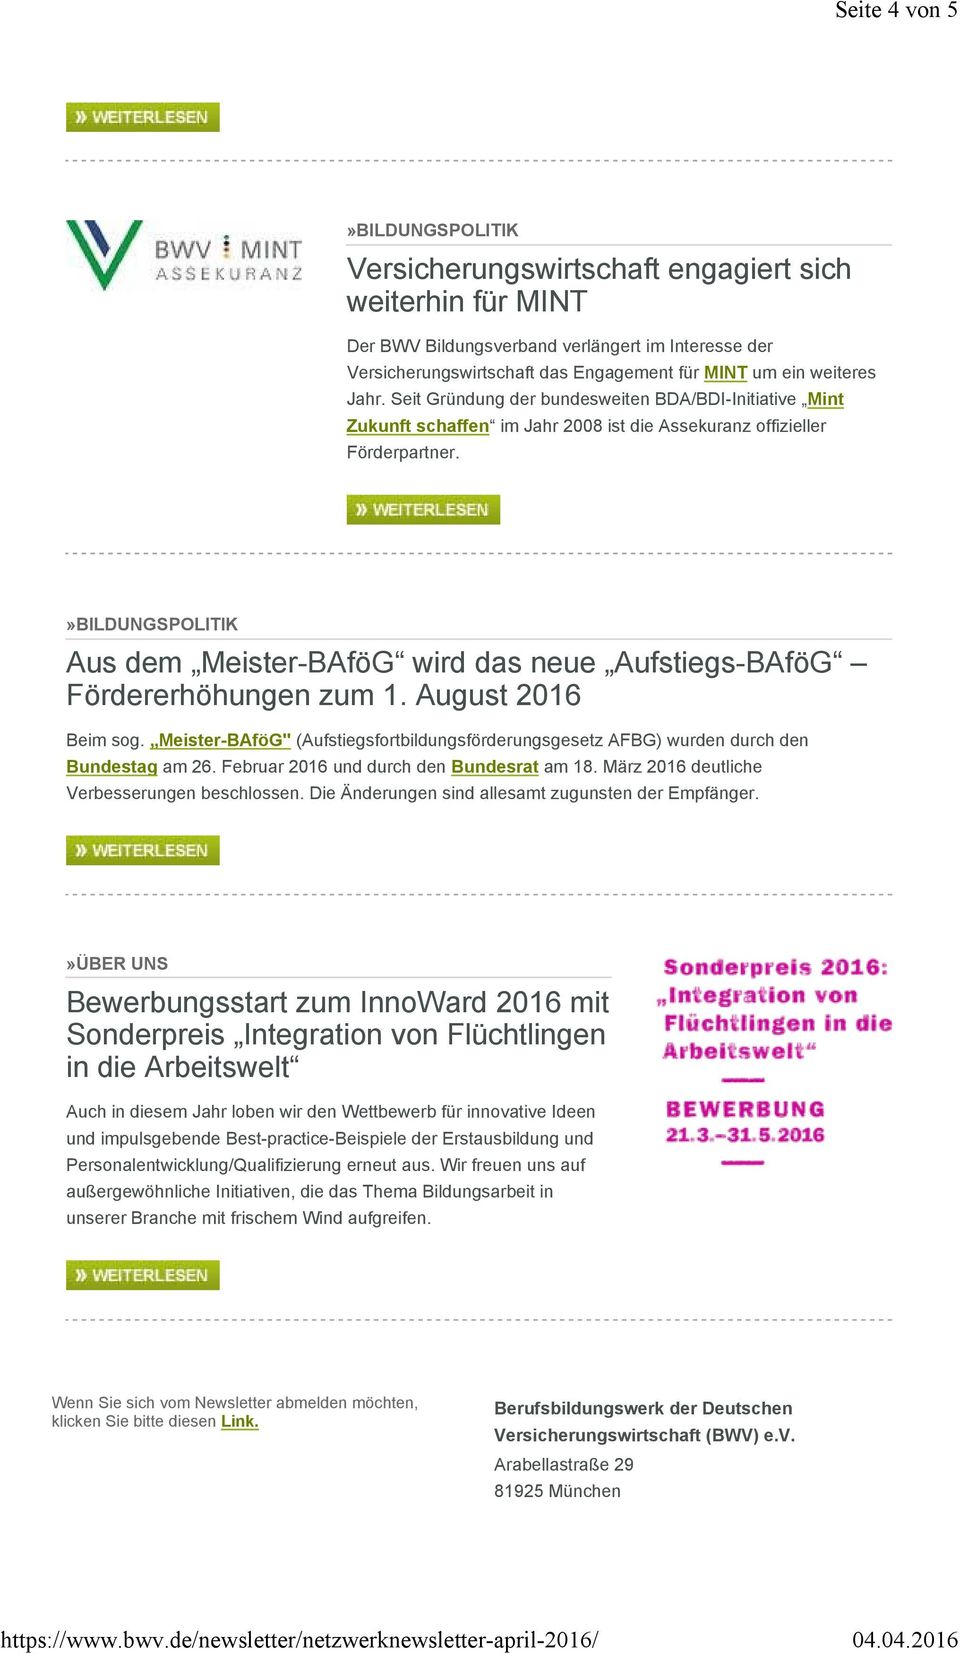 Aus dem Meister-BAföG wird das neue Aufstiegs-BAföG Fördererhöhungen zum 1. August 2016 Beim sog. Meister-BAföG" (Aufstiegsfortbildungsförderungsgesetz AFBG) wurden durch den Bundestag am 26.